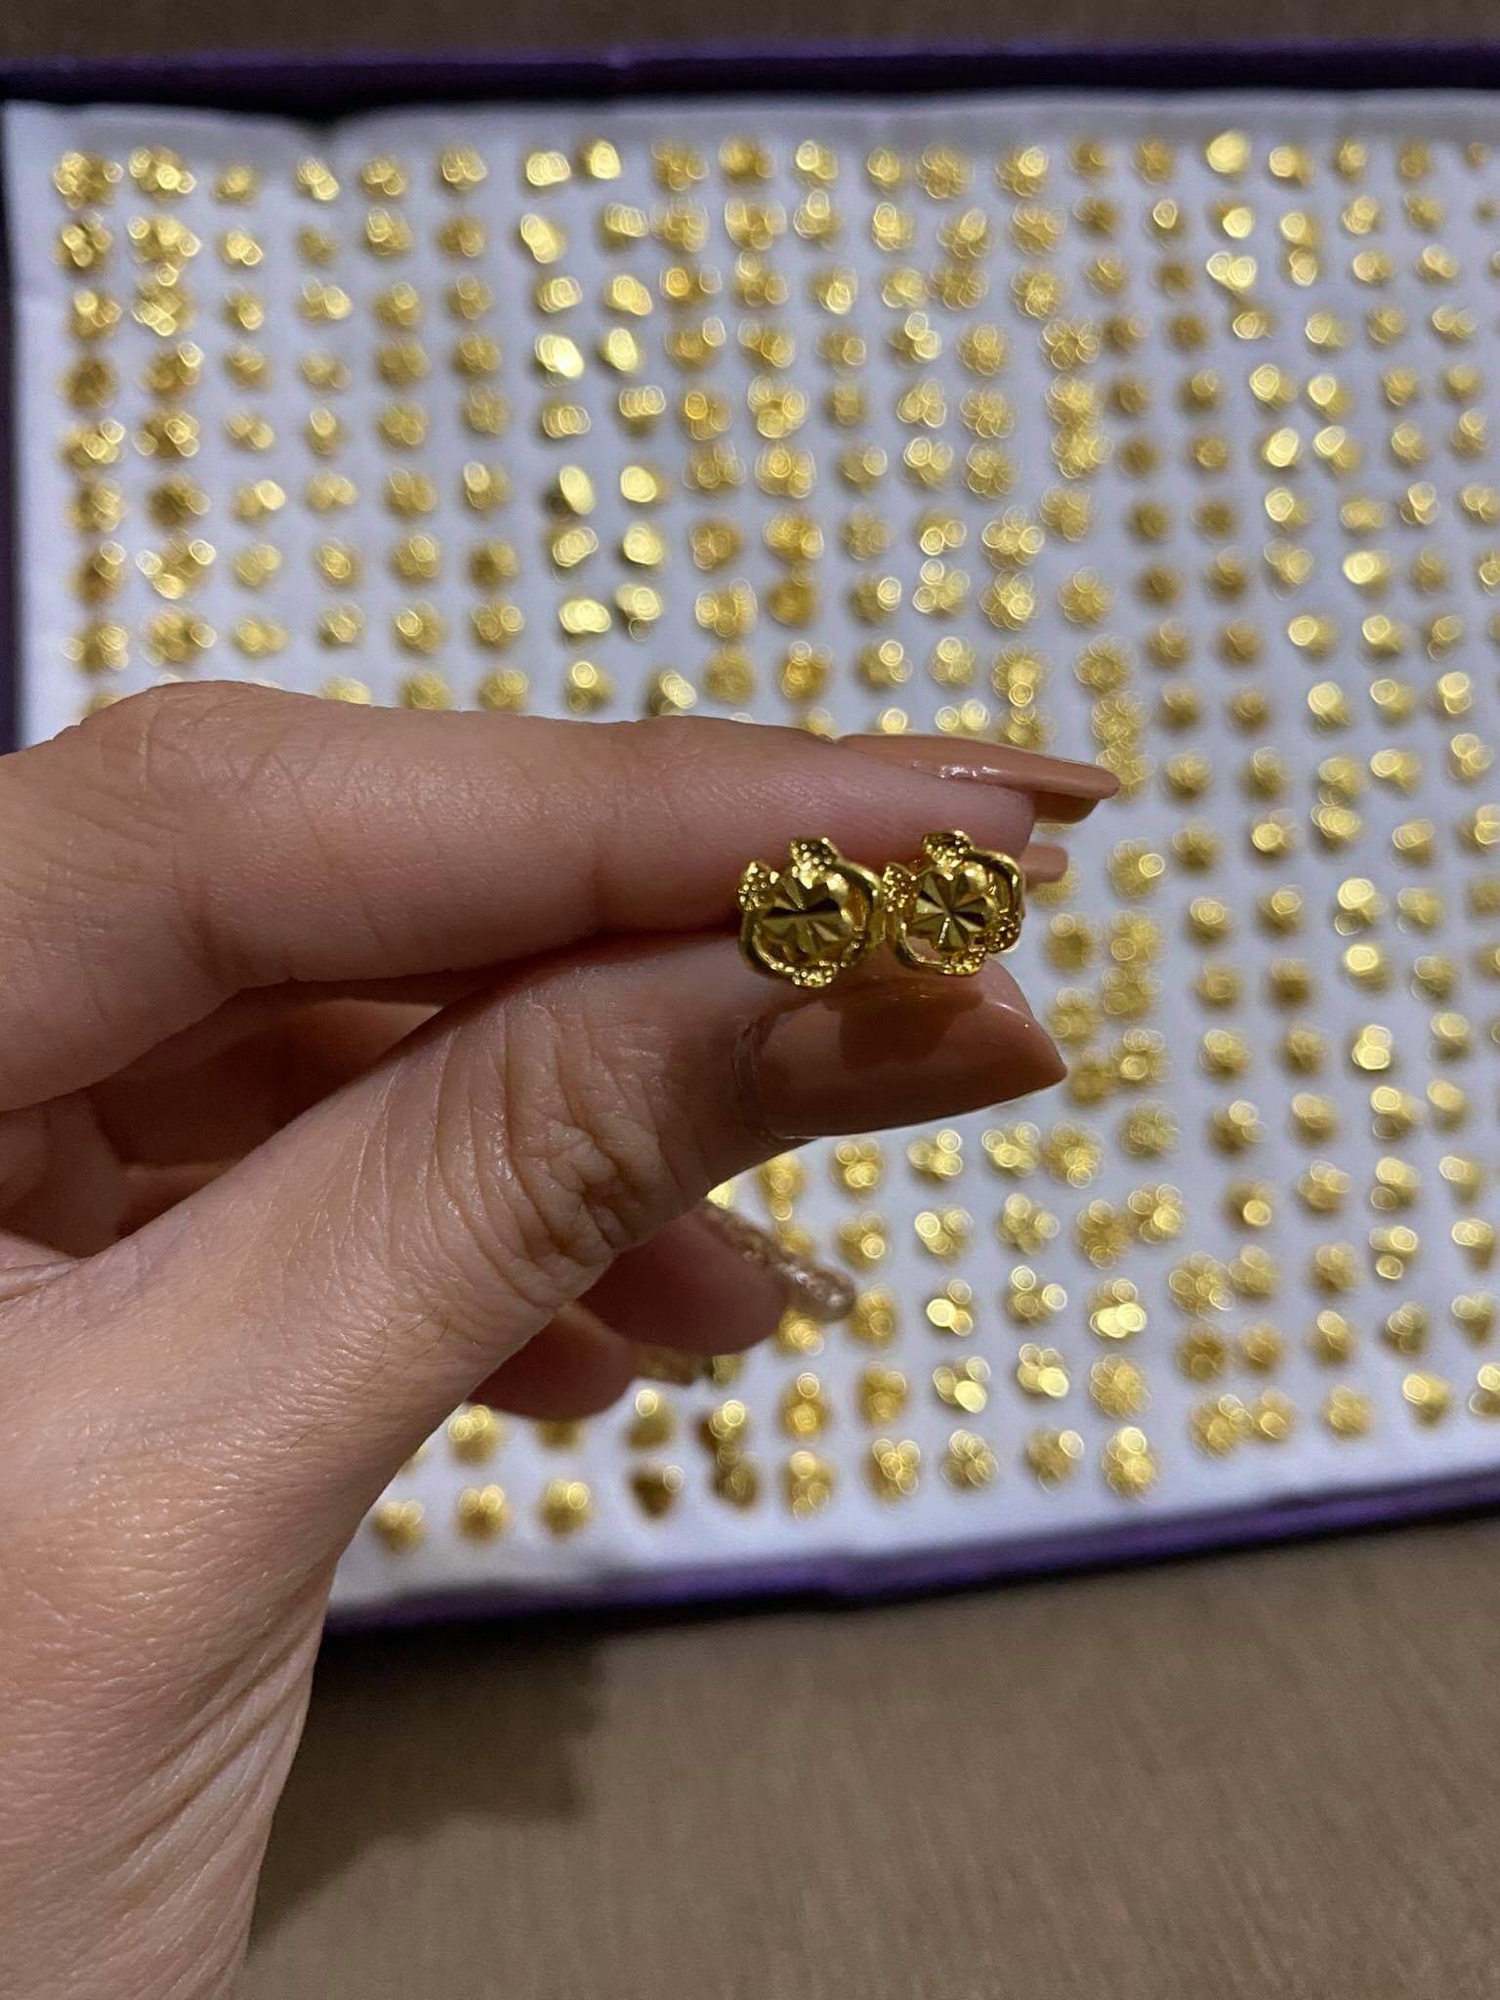 Dubai gold earrings design|Arabic design gold earrings - YouTube